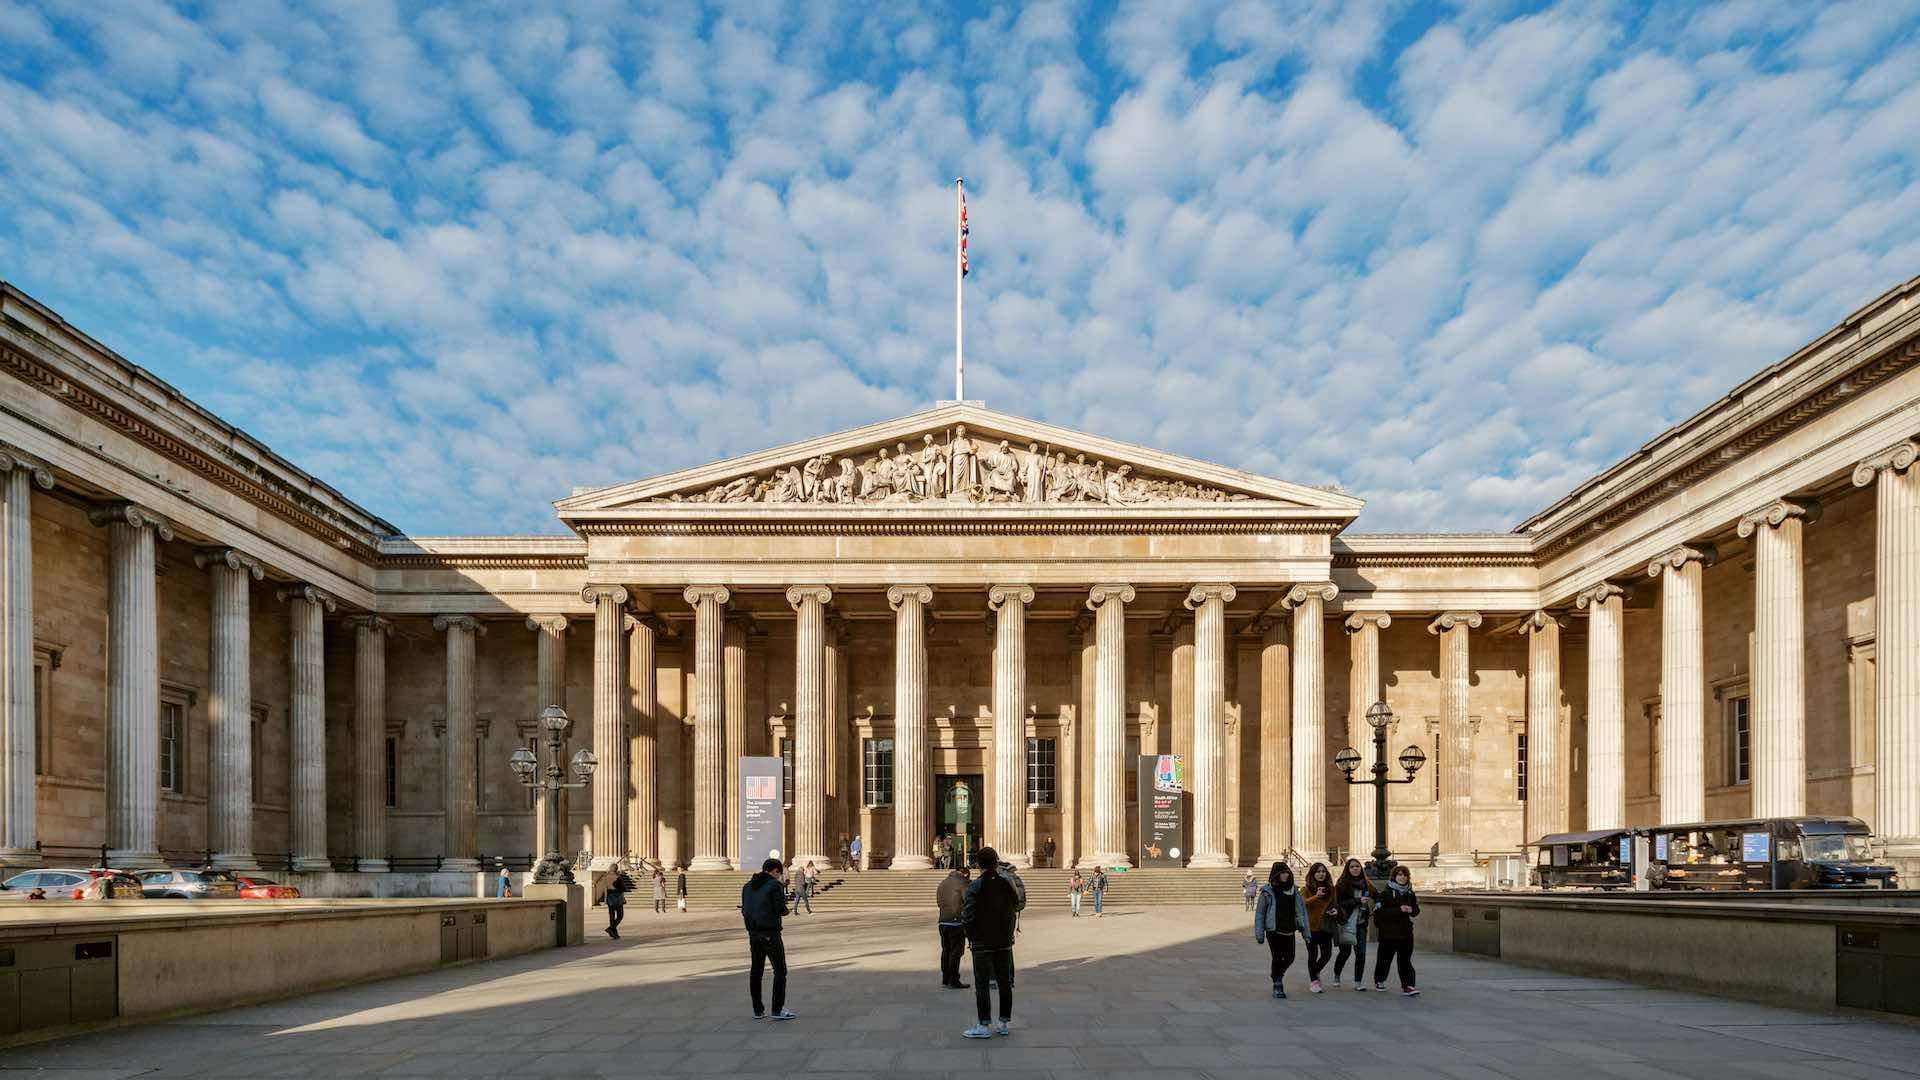 The British Museum Activities